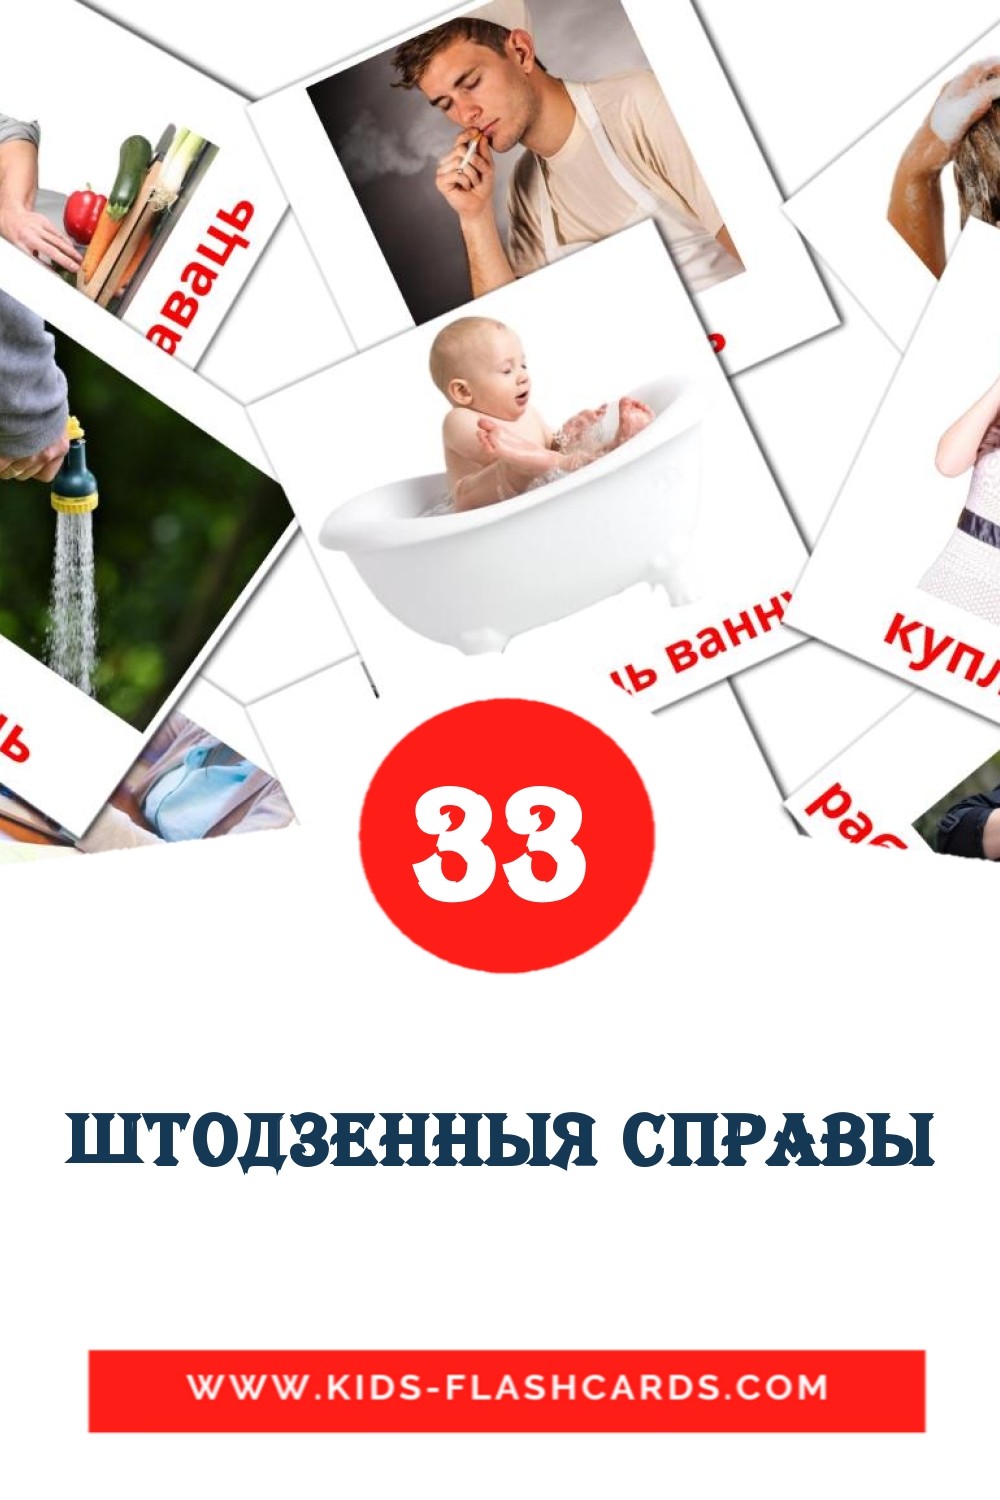 33 tarjetas didacticas de штодзенныя справы para el jardín de infancia en bielorruso